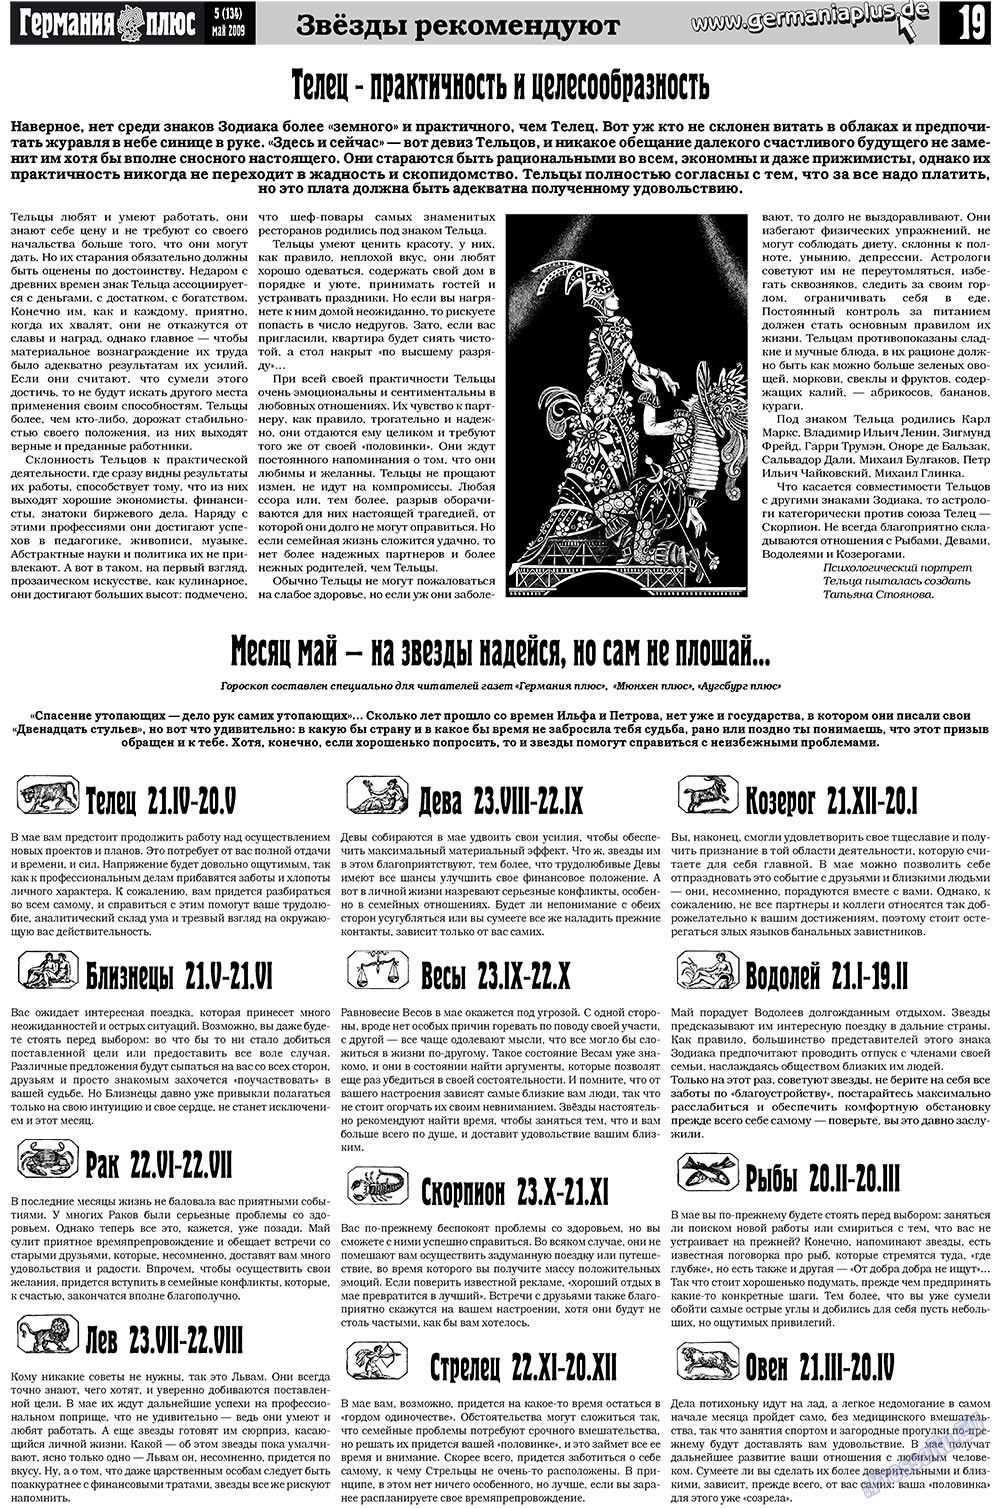 Германия плюс (газета). 2009 год, номер 5, стр. 23